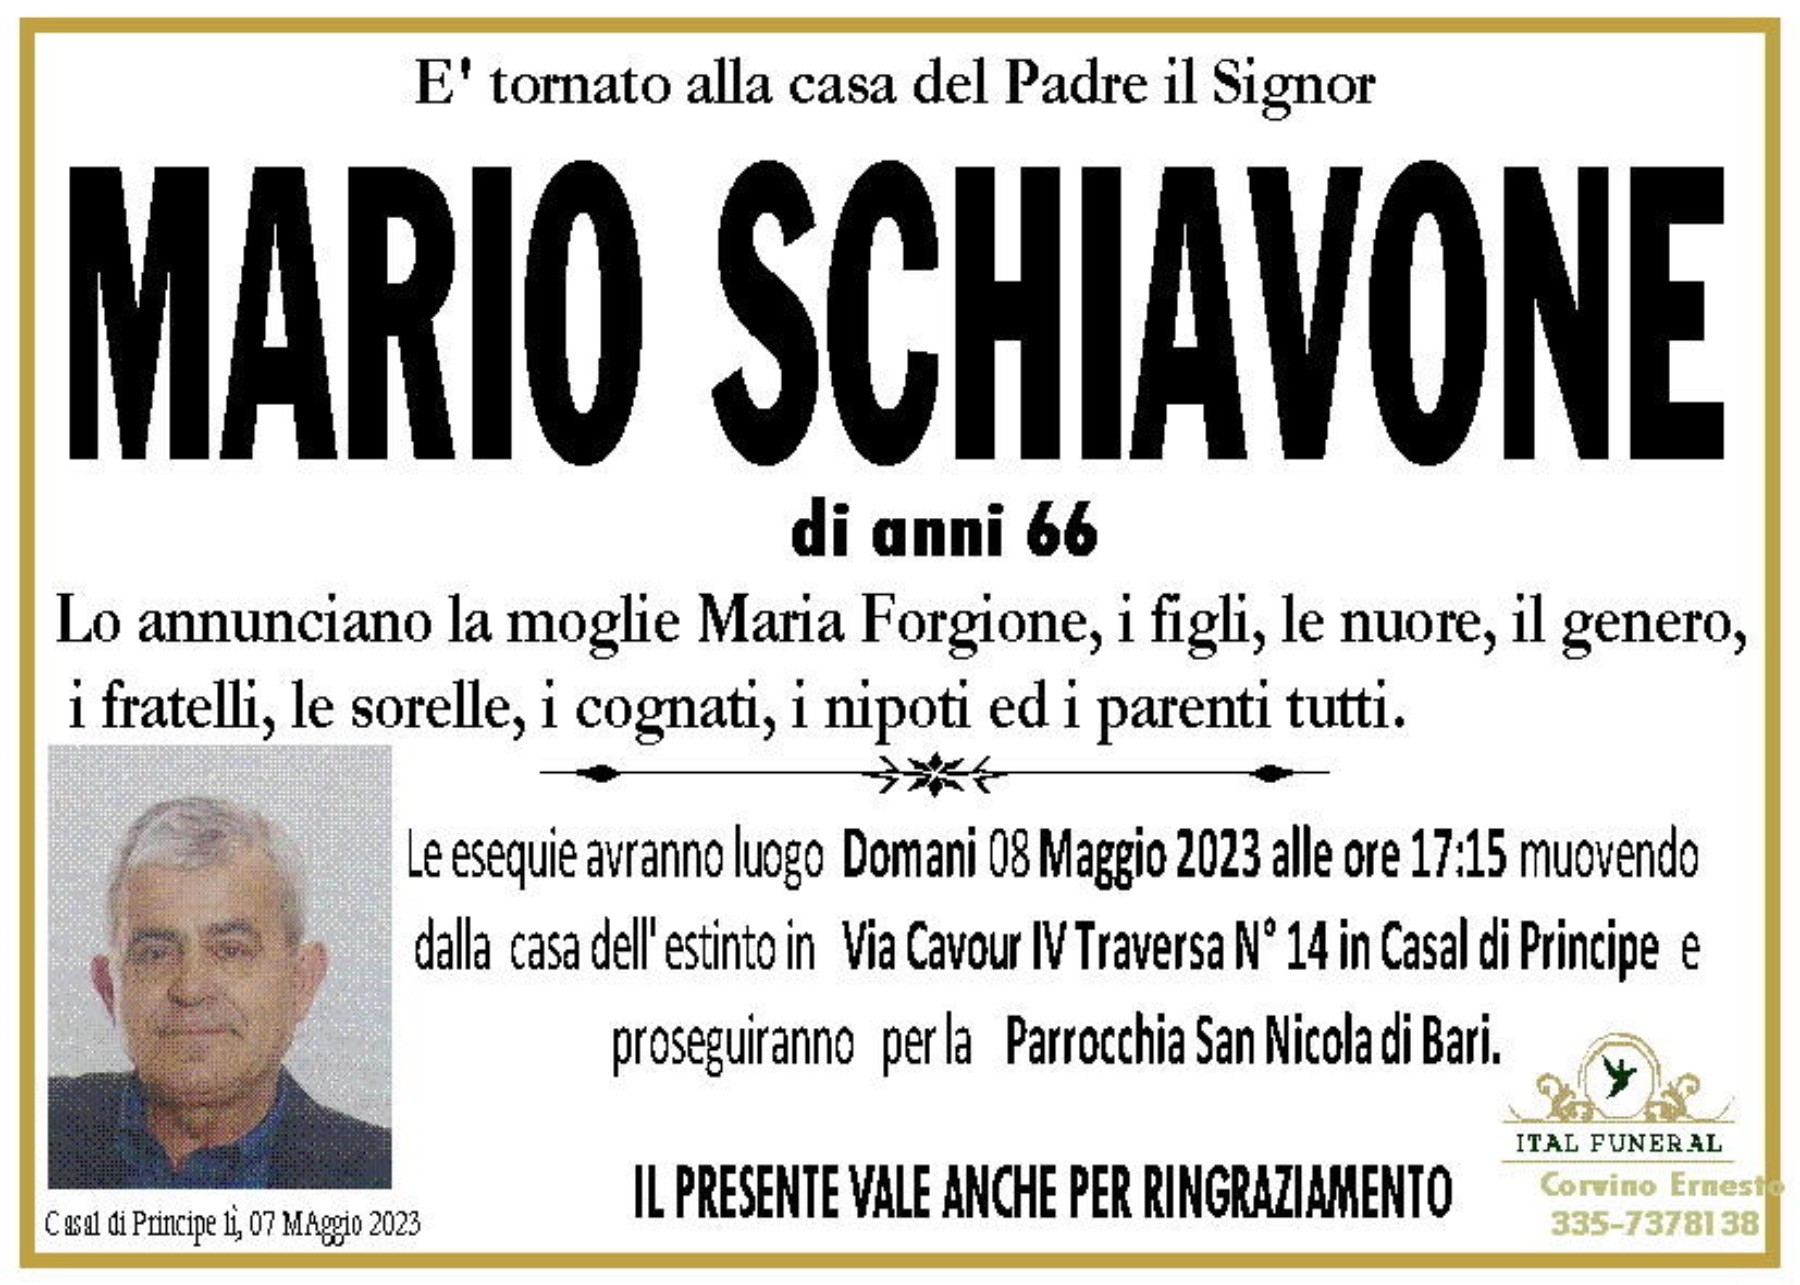 Mario Schiavone